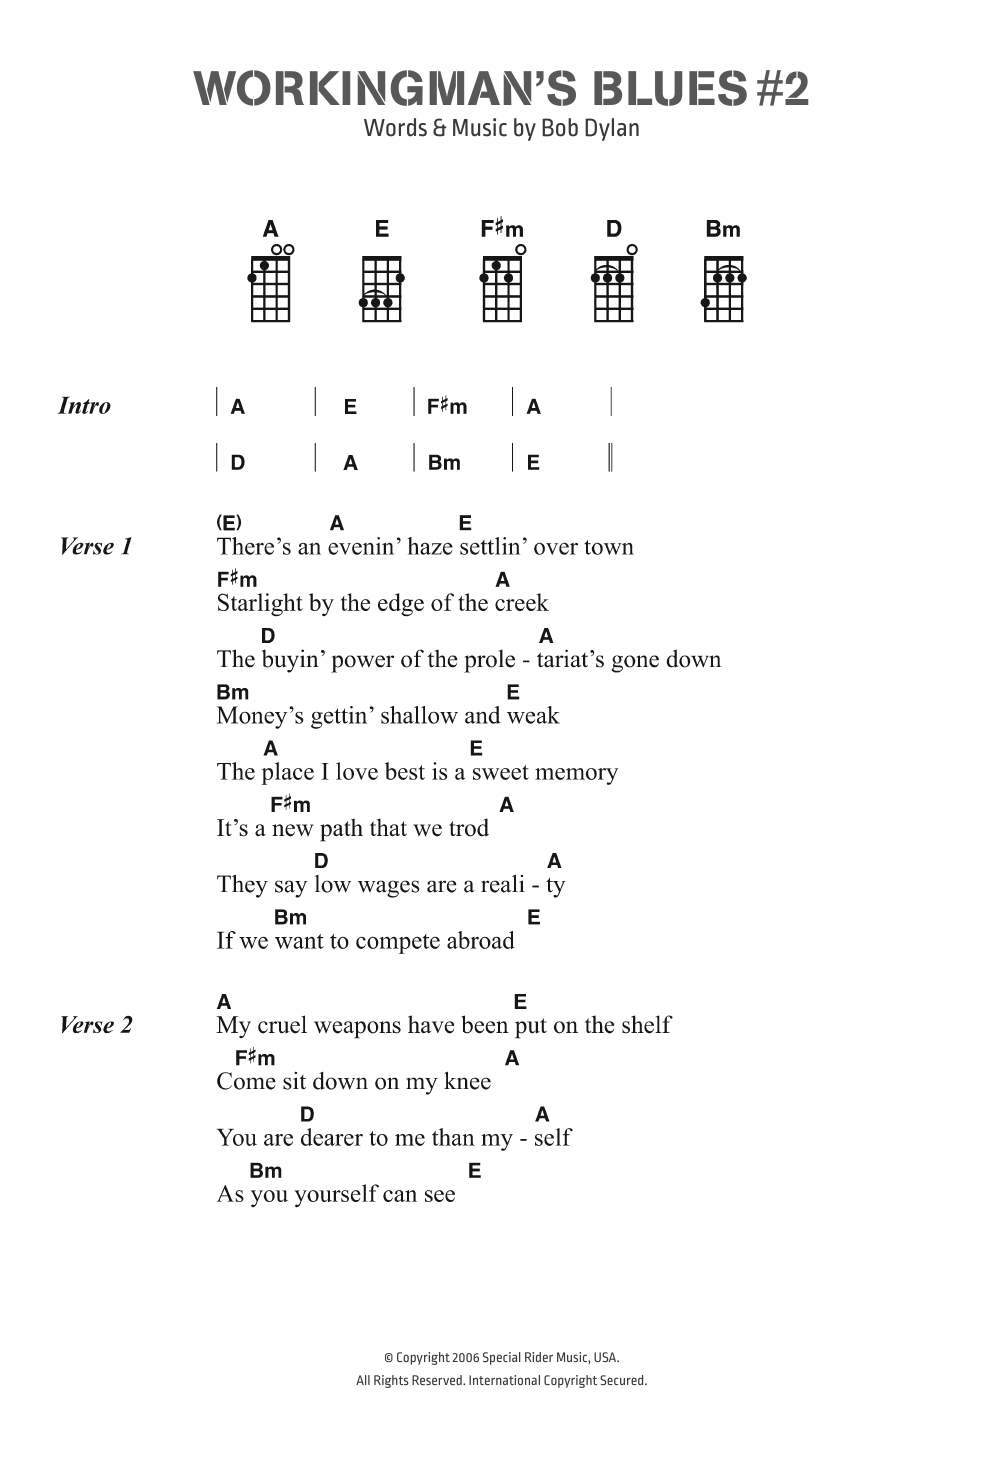 Bob Dylan Workingman's Blues # 2 Sheet Music Notes & Chords for Ukulele Lyrics & Chords - Download or Print PDF